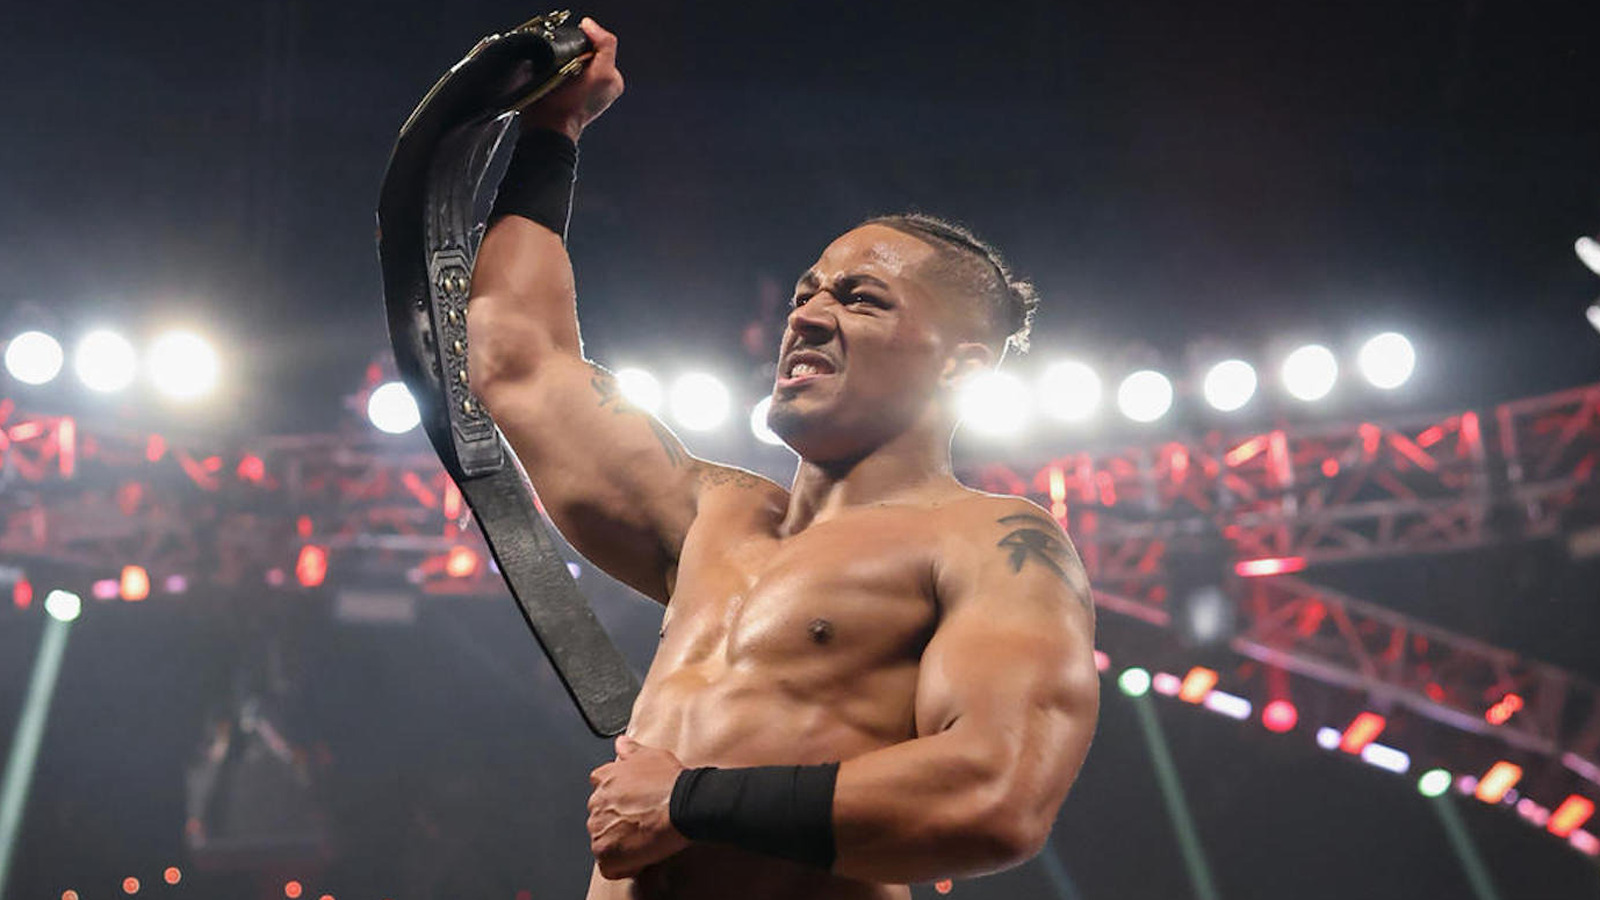 WWE aparentemente solicita una nueva marca registrada de NXT